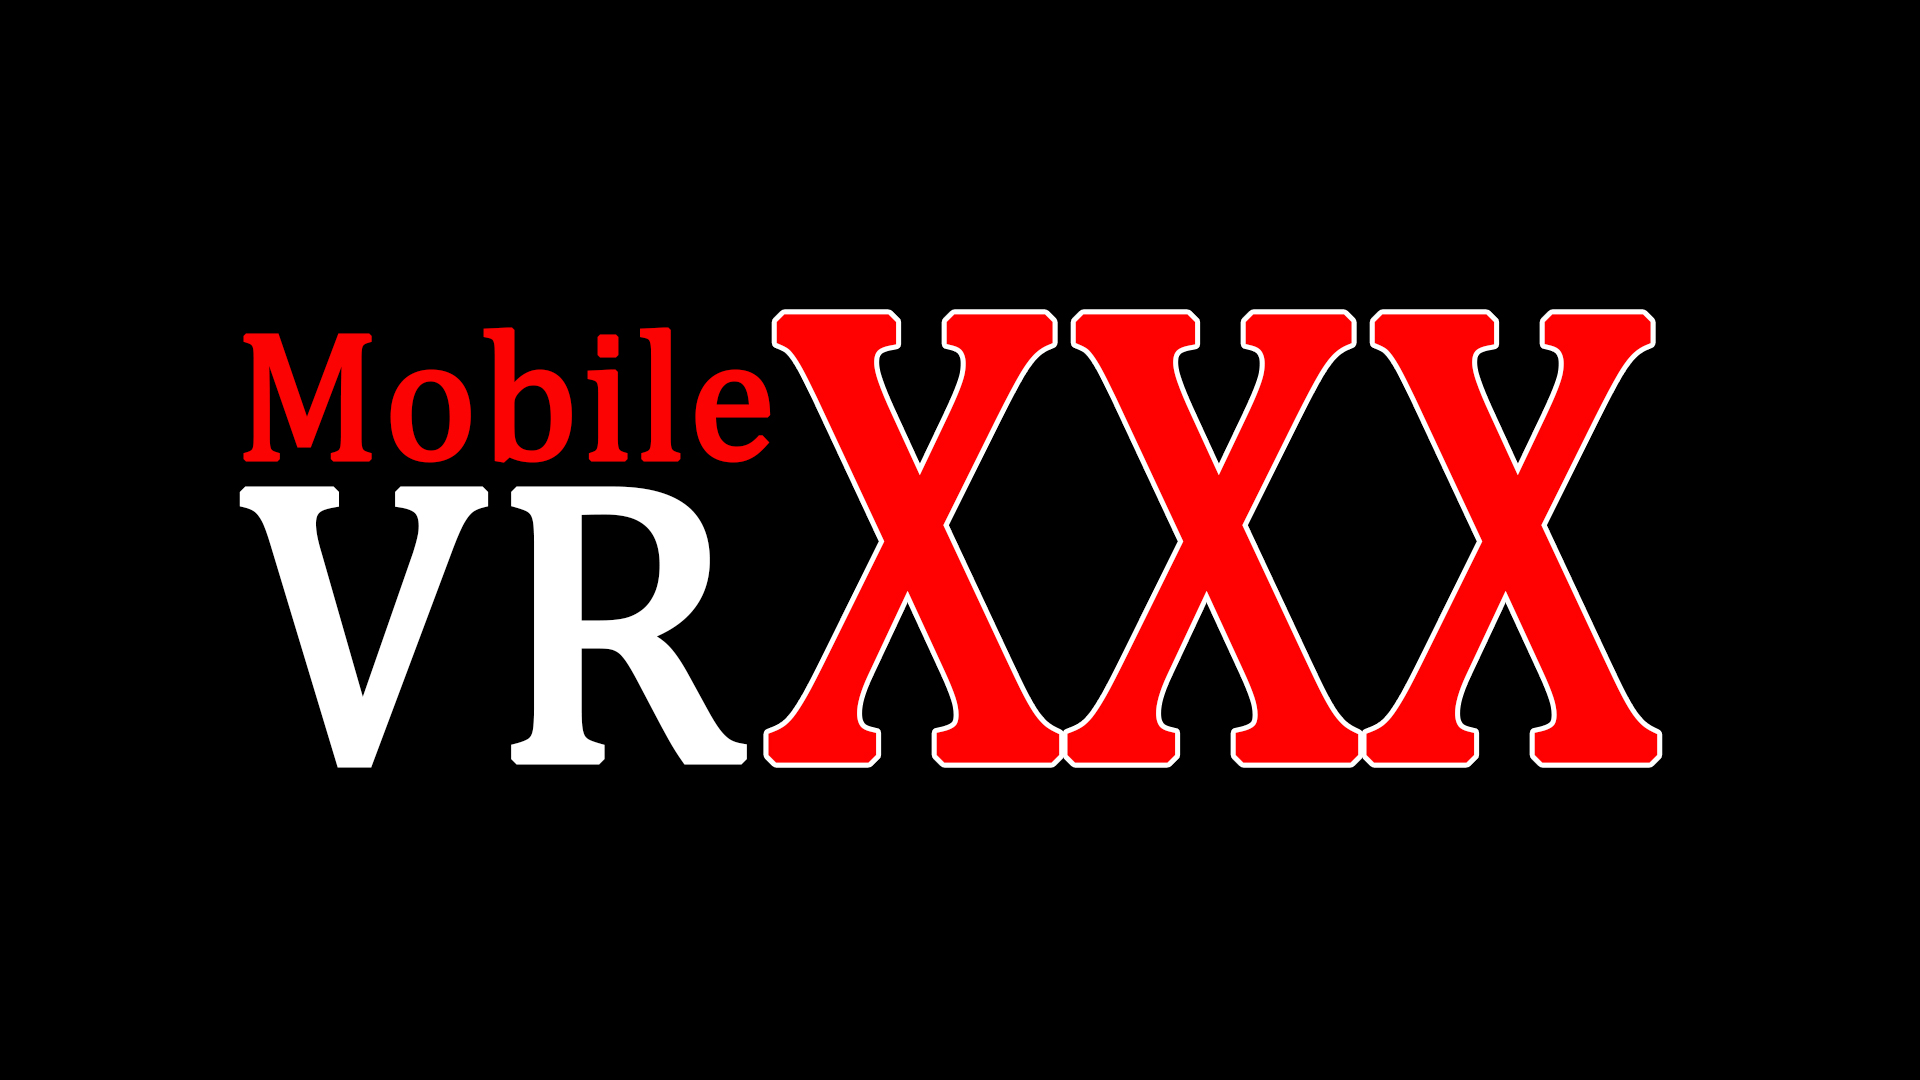 vr porn videos streaming virtual reality porn mobilevrxxx 14